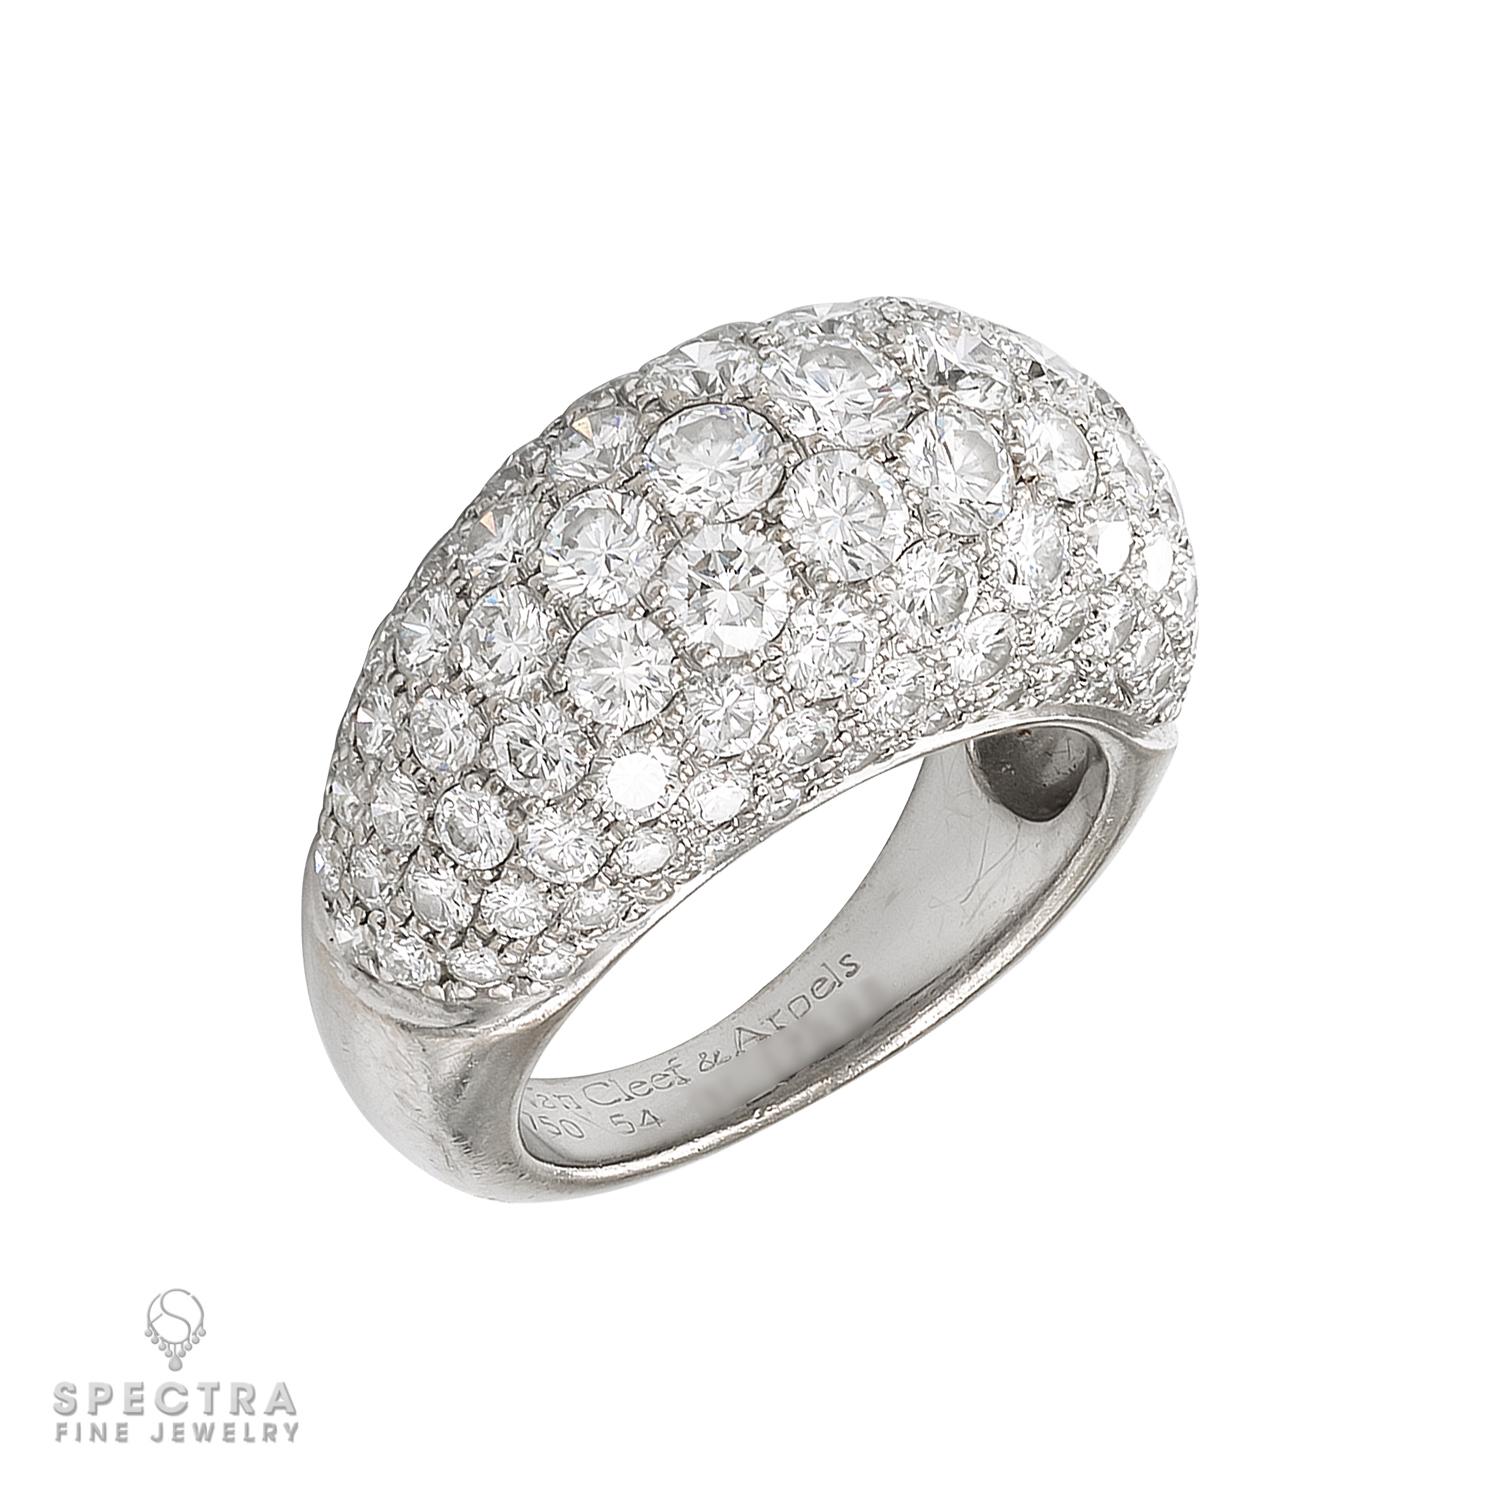 La parure de diamants en or blanc 18 carats de Van Cleef & Arpels est l'incarnation de l'élégance luxueuse et d'un savoir-faire exceptionnel. Cet ensemble exquis comprend une paire de boucles d'oreilles serties de diamants et une bague assortie,